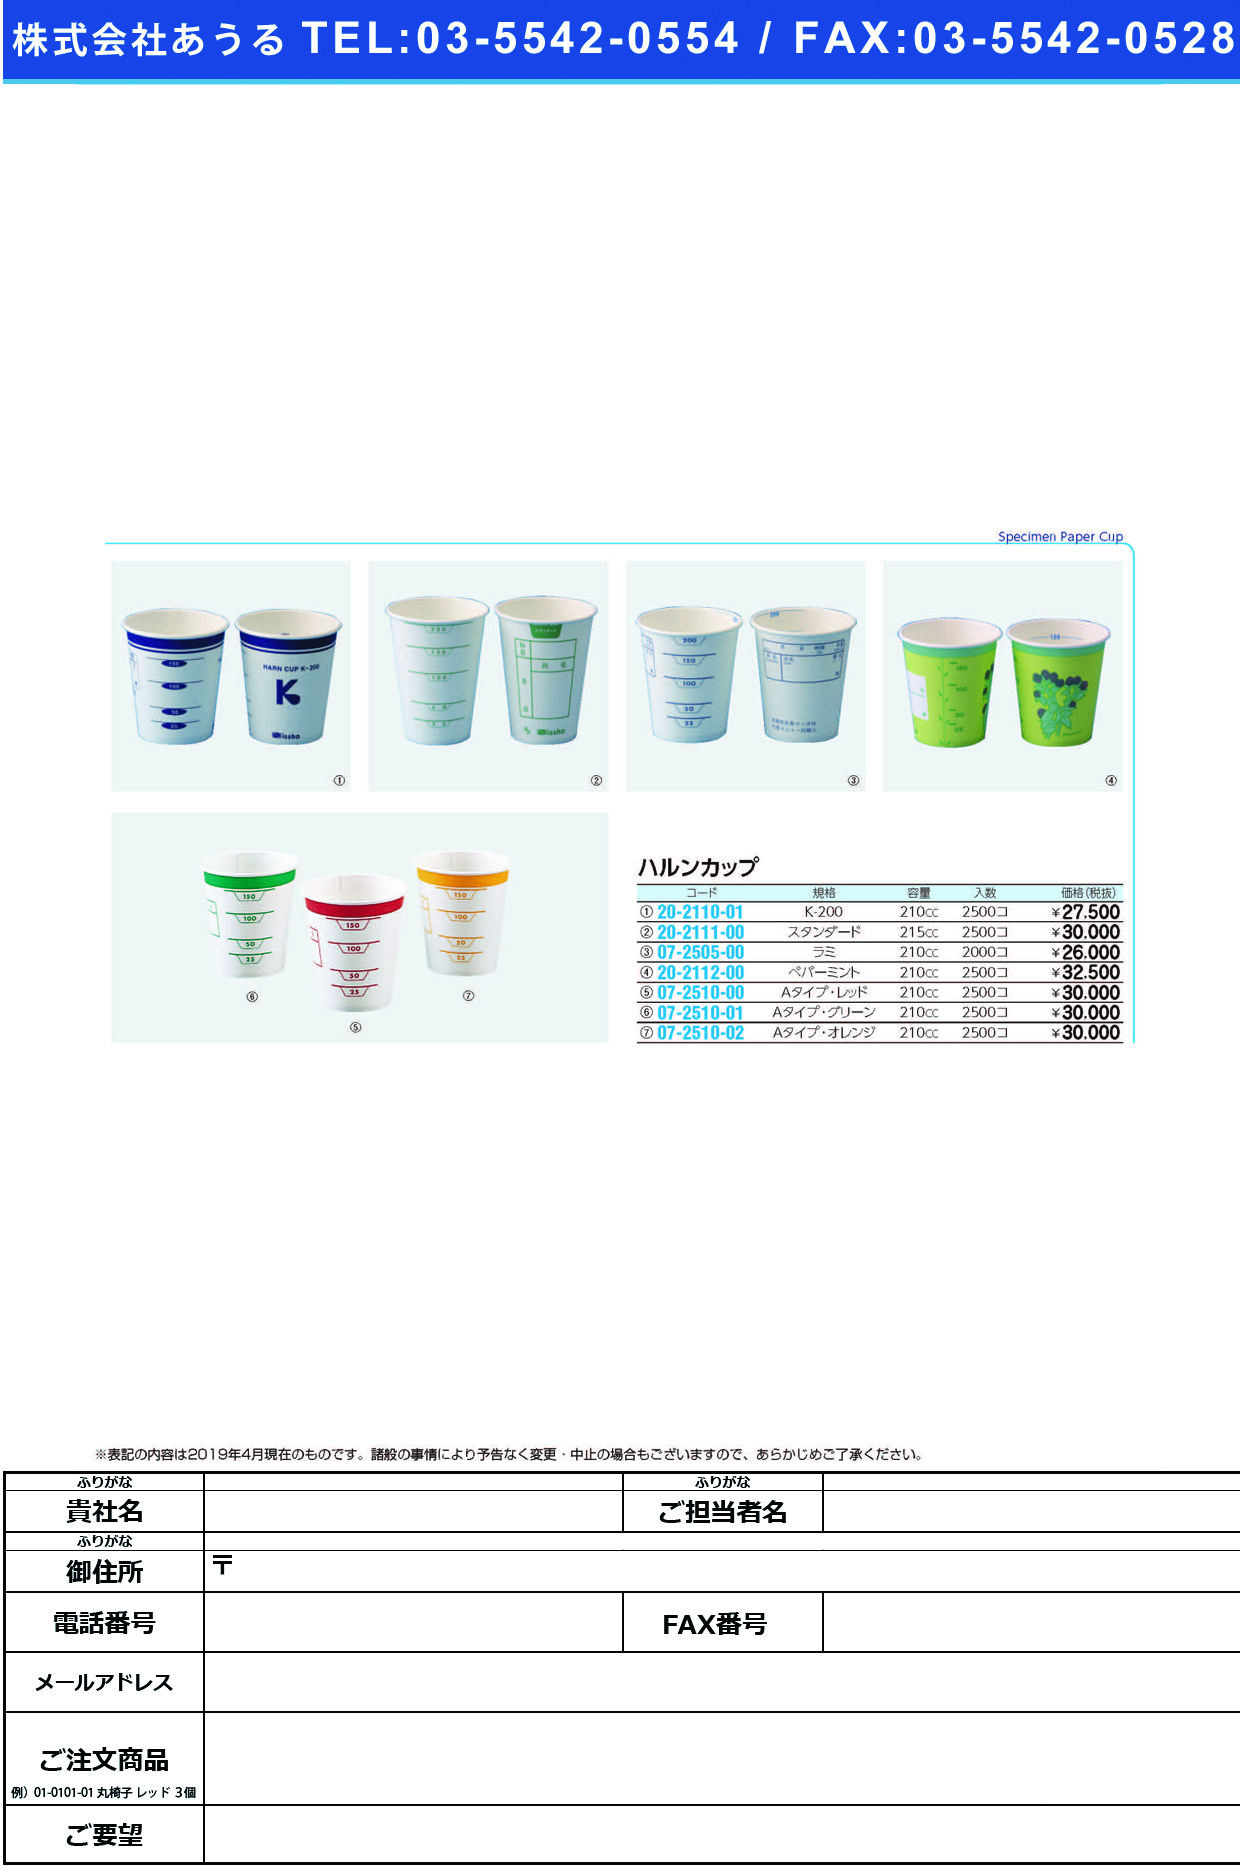 (07-2510-02)ハルンカップ（採尿カップ）Ａタイプ ｵﾚﾝｼﾞ(210CC)2500ｺｲﾘ ﾊﾙﾝｶｯﾌﾟAﾀｲﾌﾟ【1梱単位】【2019年カタログ商品】